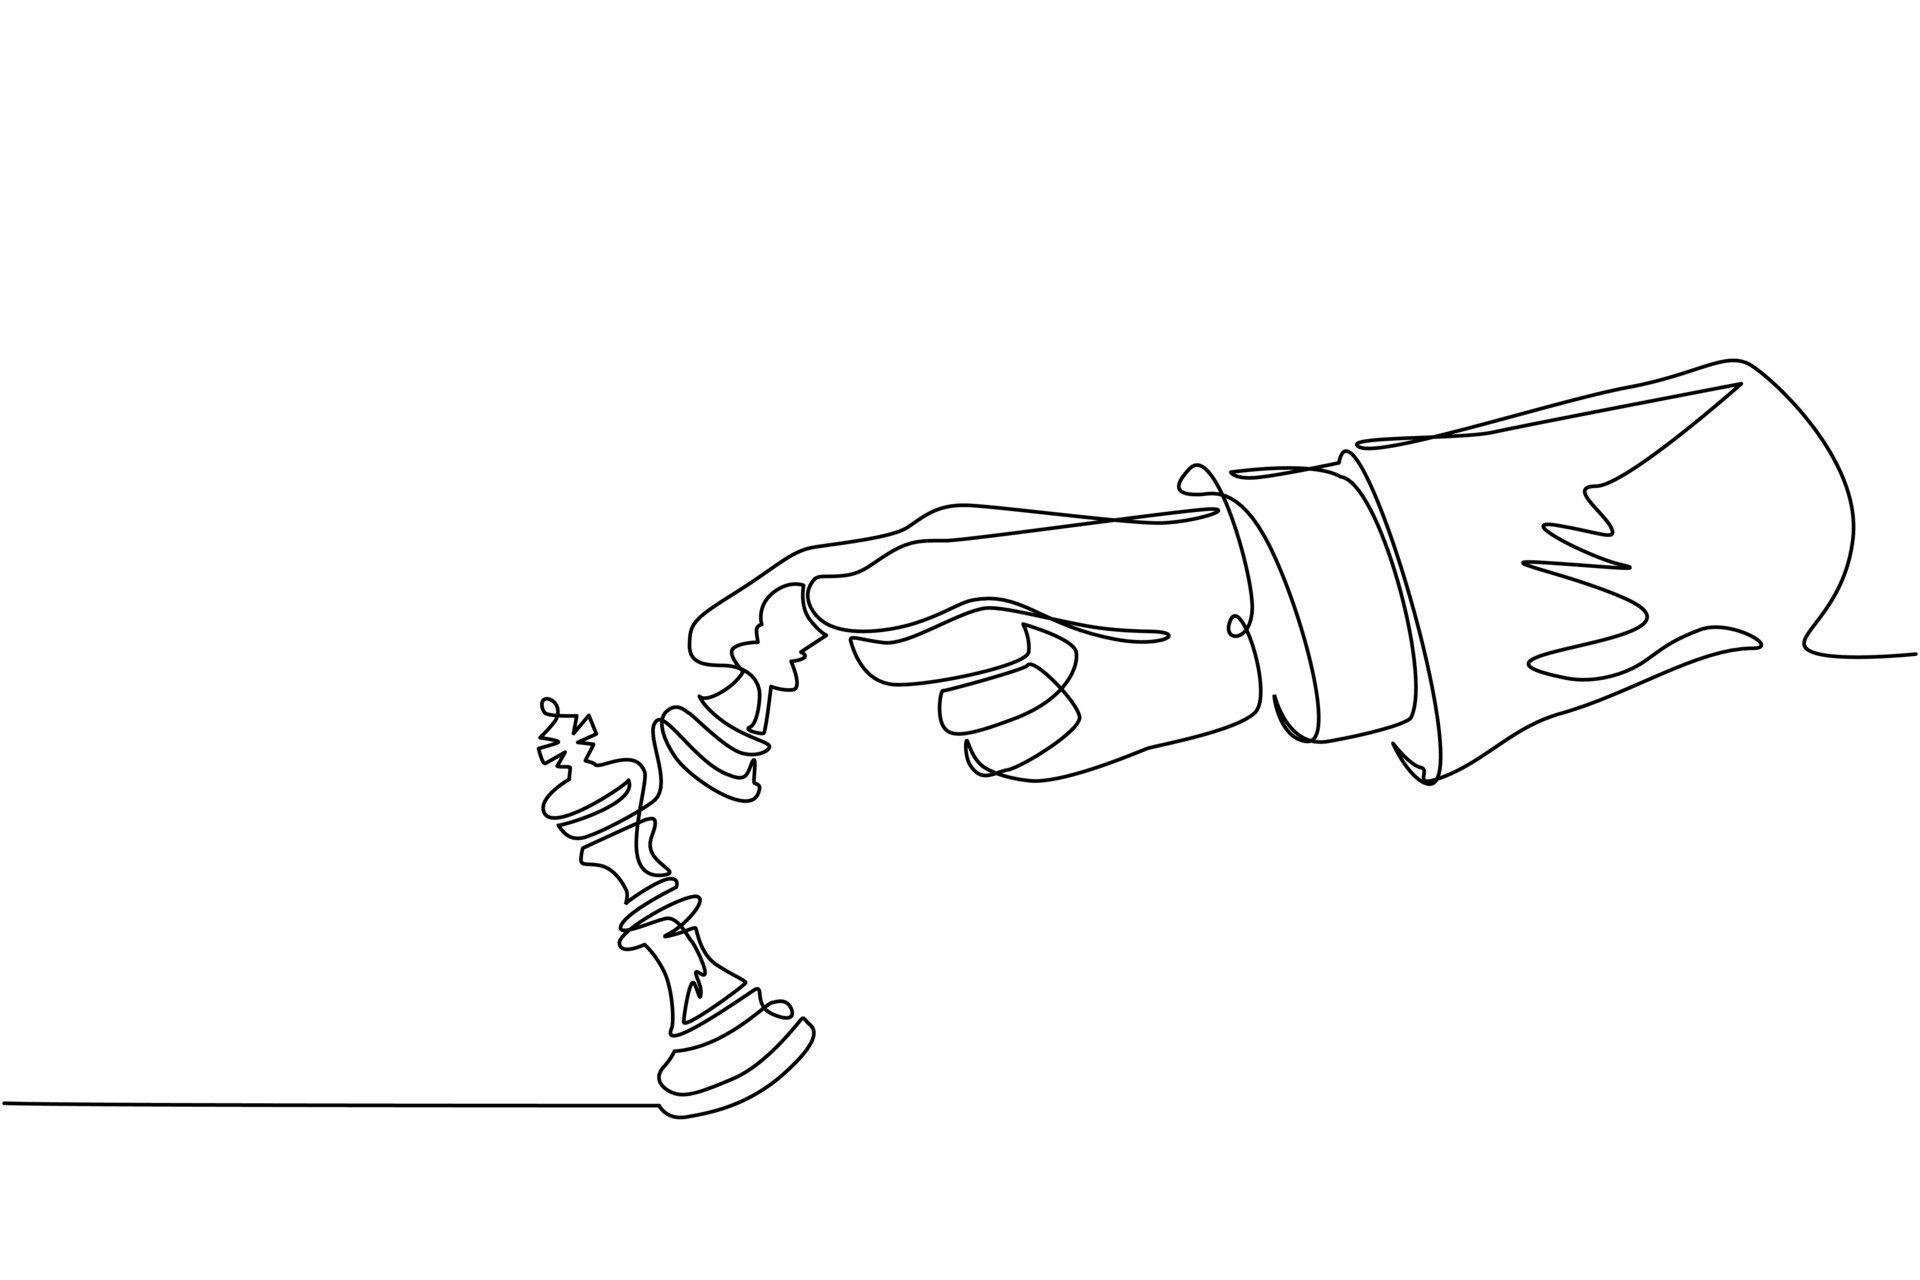 Vetor Artístico Desenho Ilustração de Xadrez Rei e Peão Enfrentando um ao  outro imagem vetorial de ursus@zdeneksasek.com© 200328288